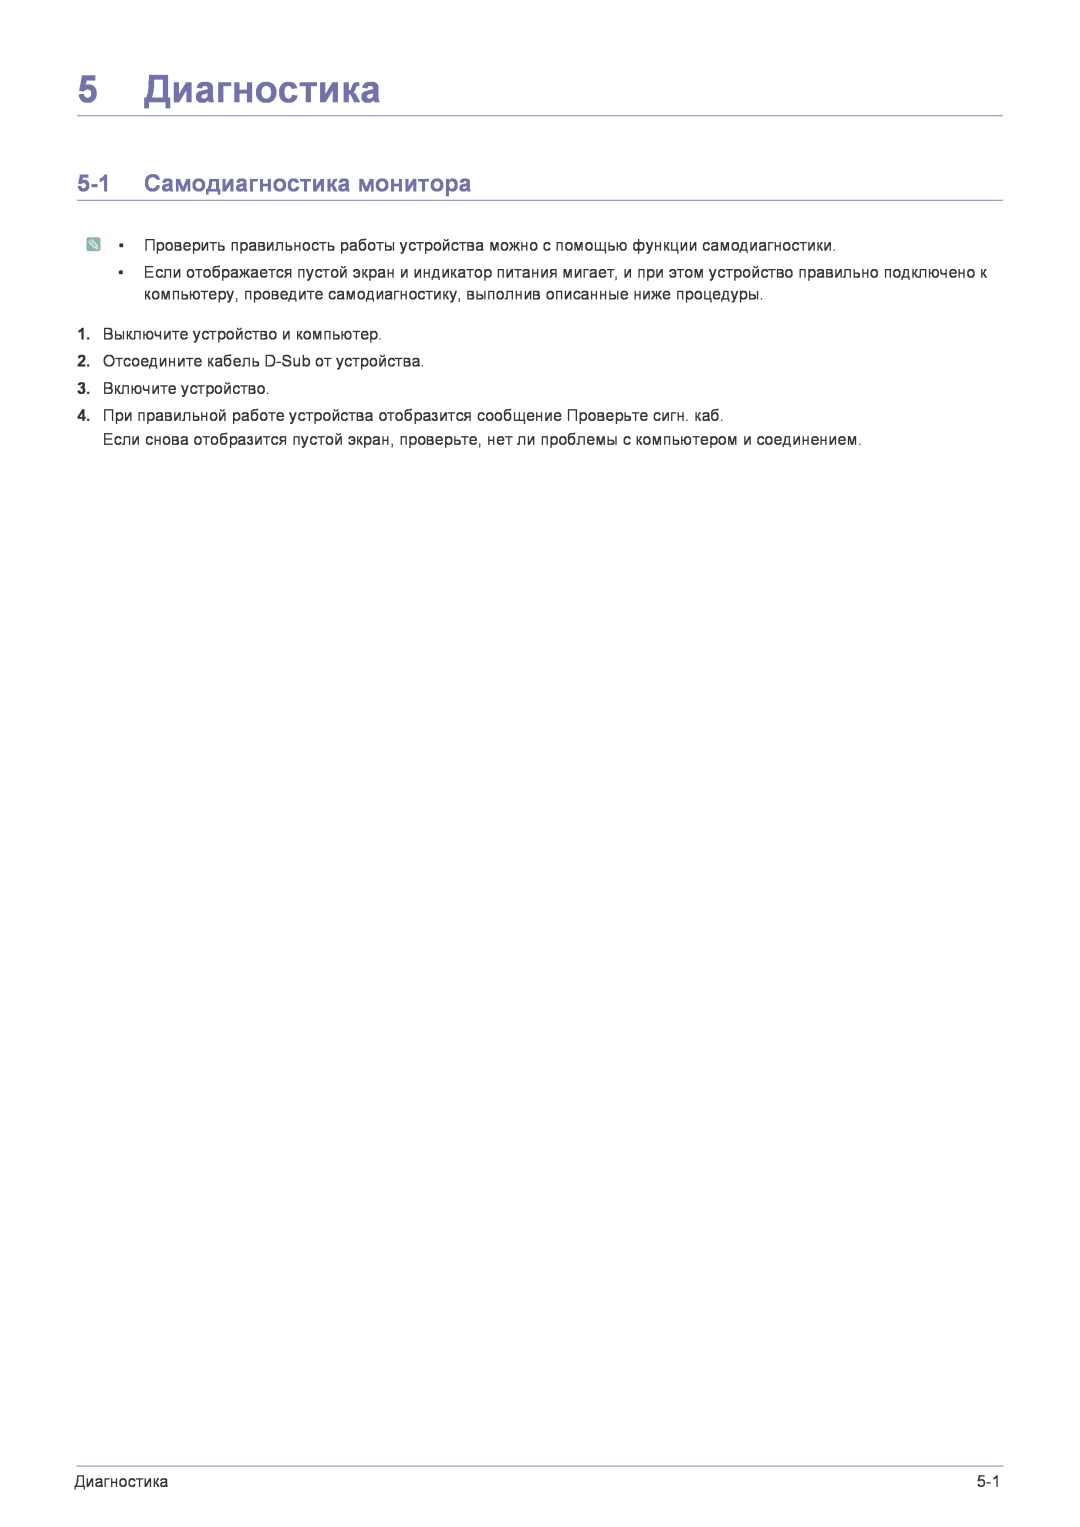 Samsung LS22FMDGF/EN manual 5 Диагностика, 5-1 Самодиагностика монитора 